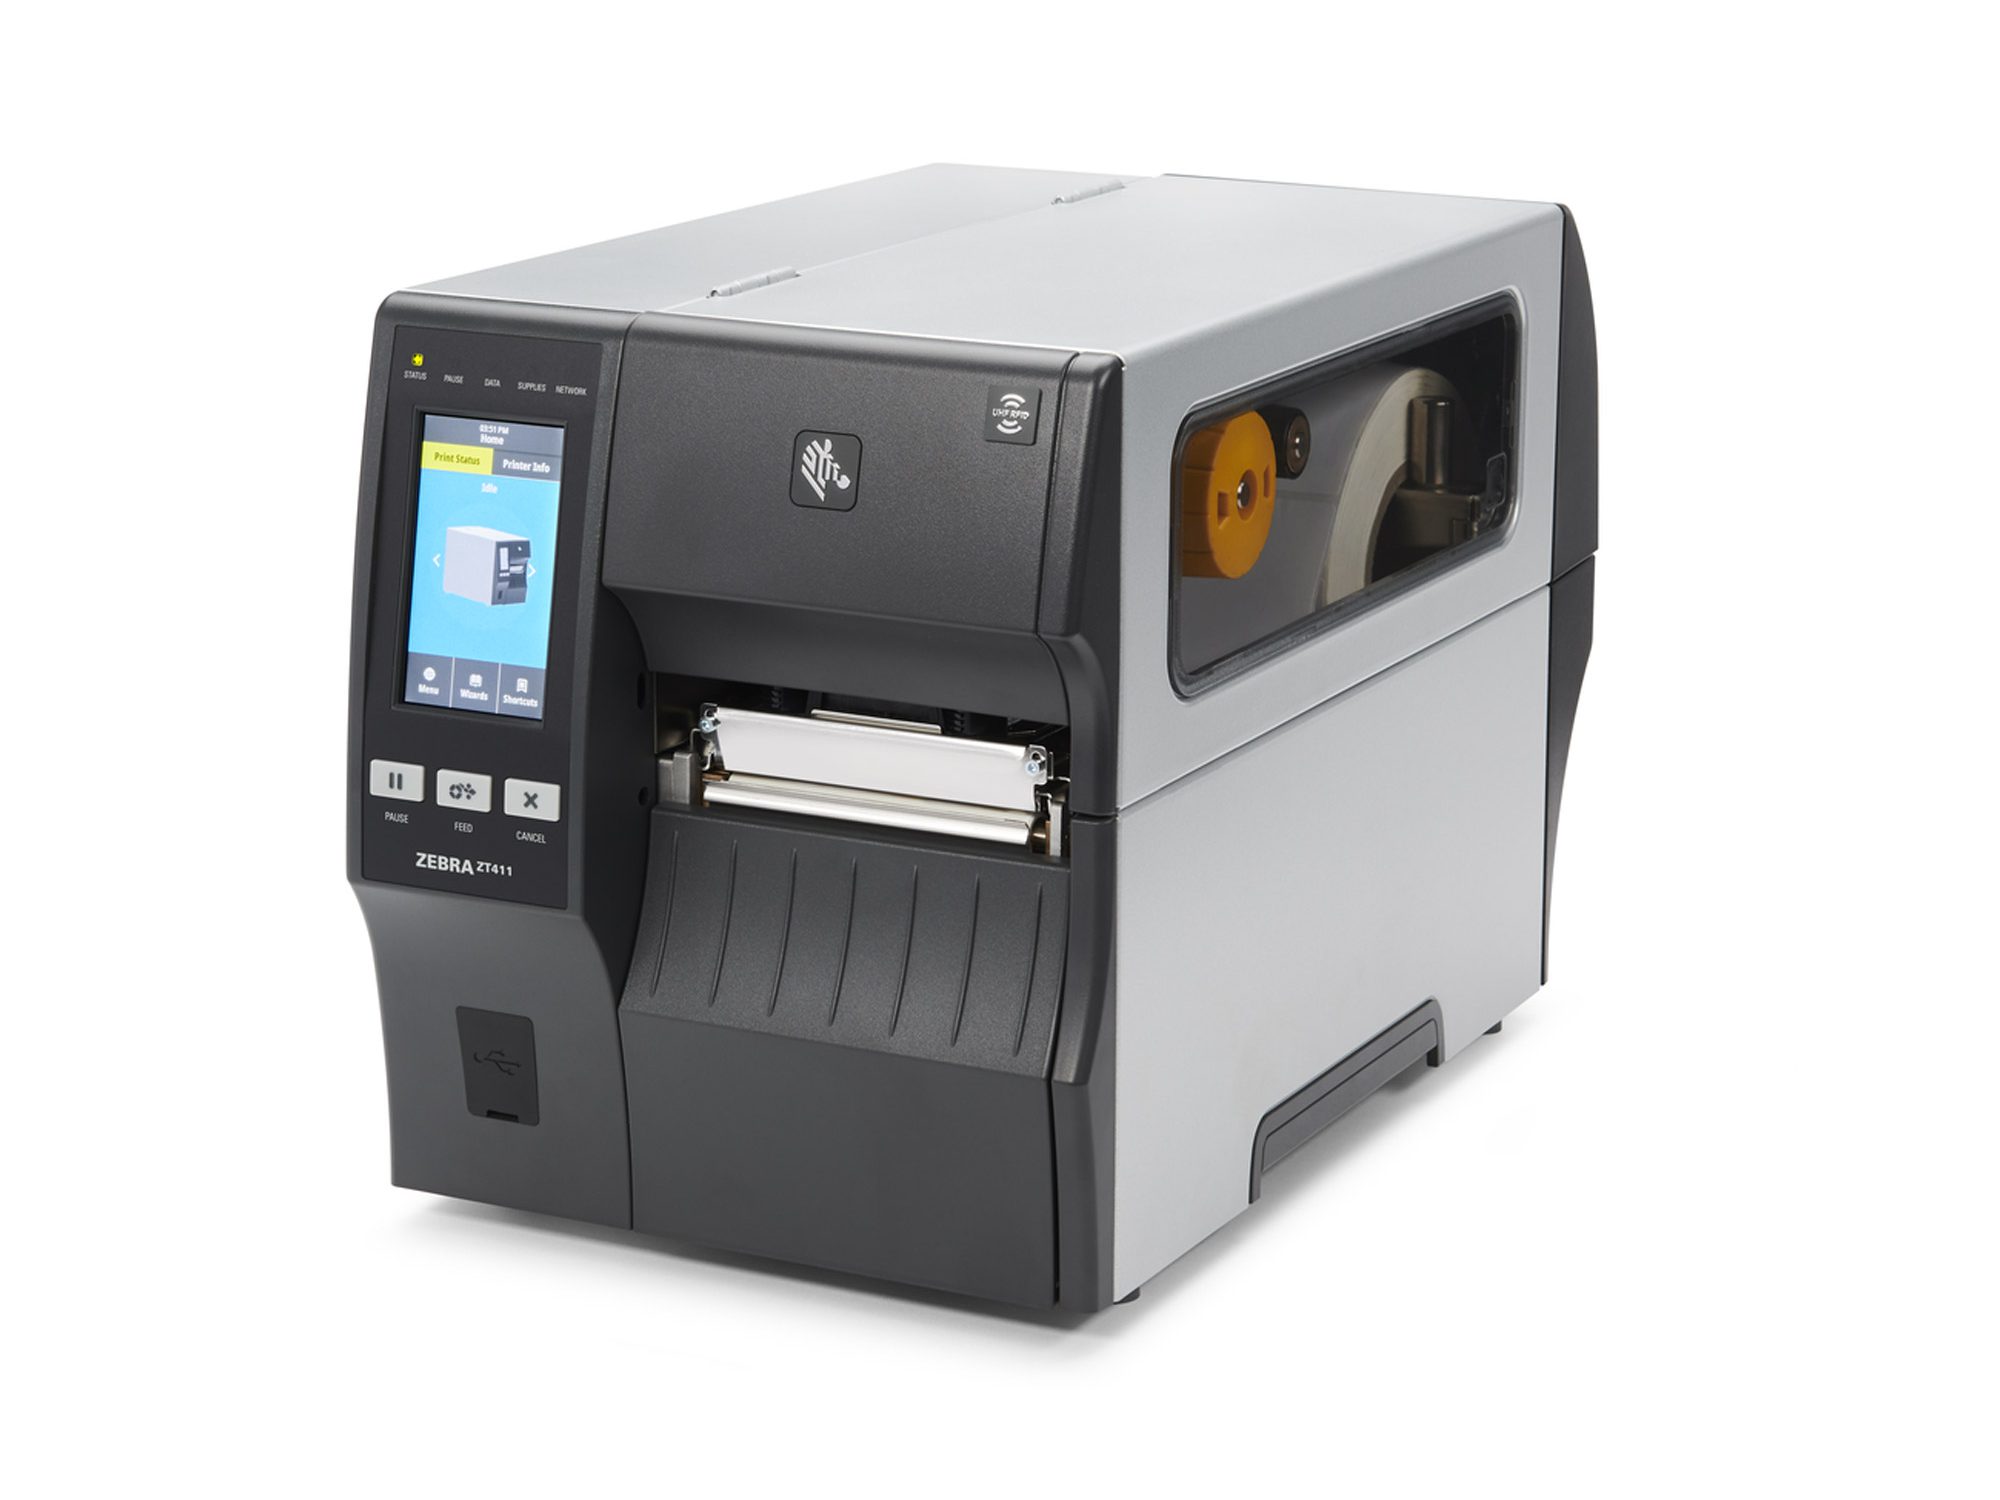 Zebra industrial printer